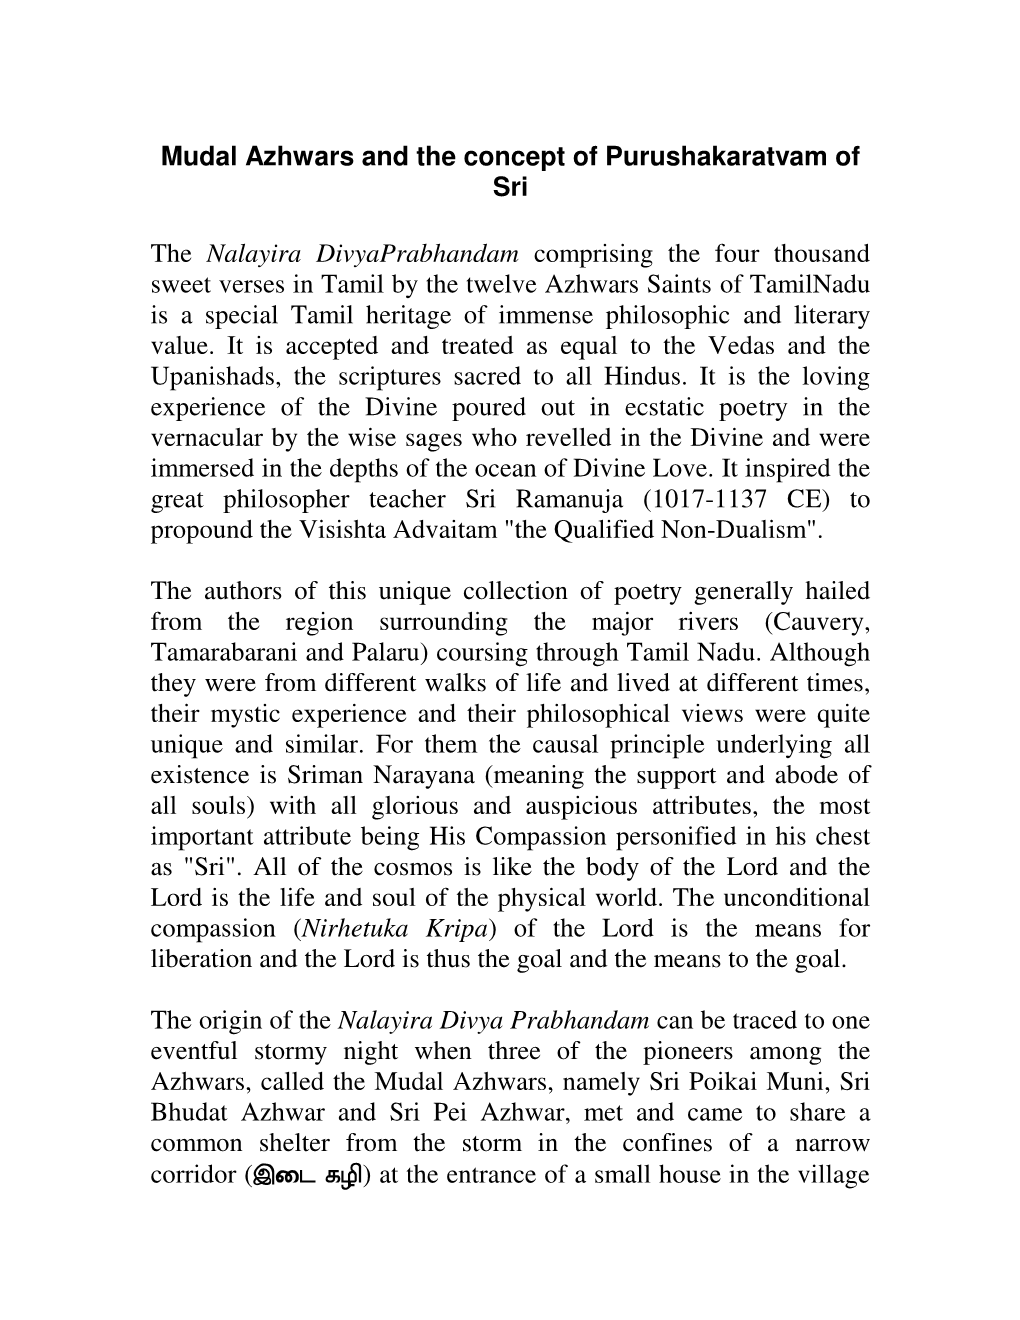 Mudal Azhwars and the Concept of Purushakaratvam of Sri The